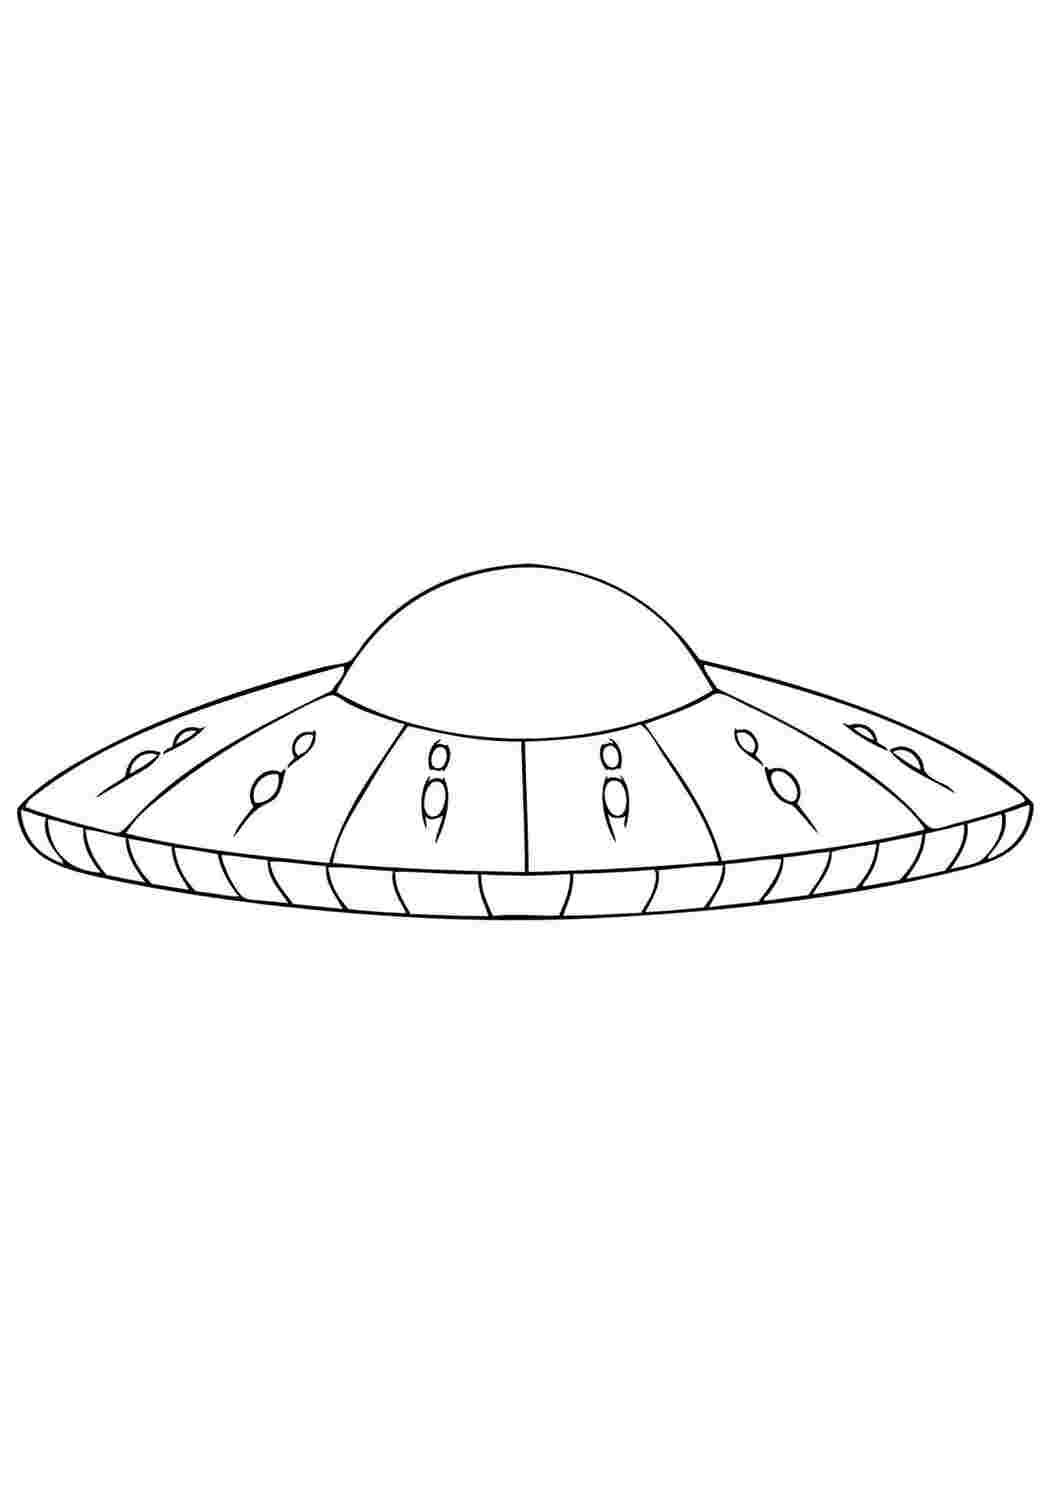 Раскраски картинки на рабочий стол онлайн Космическая тарелка, космический корабль Раскраски для мальчиков